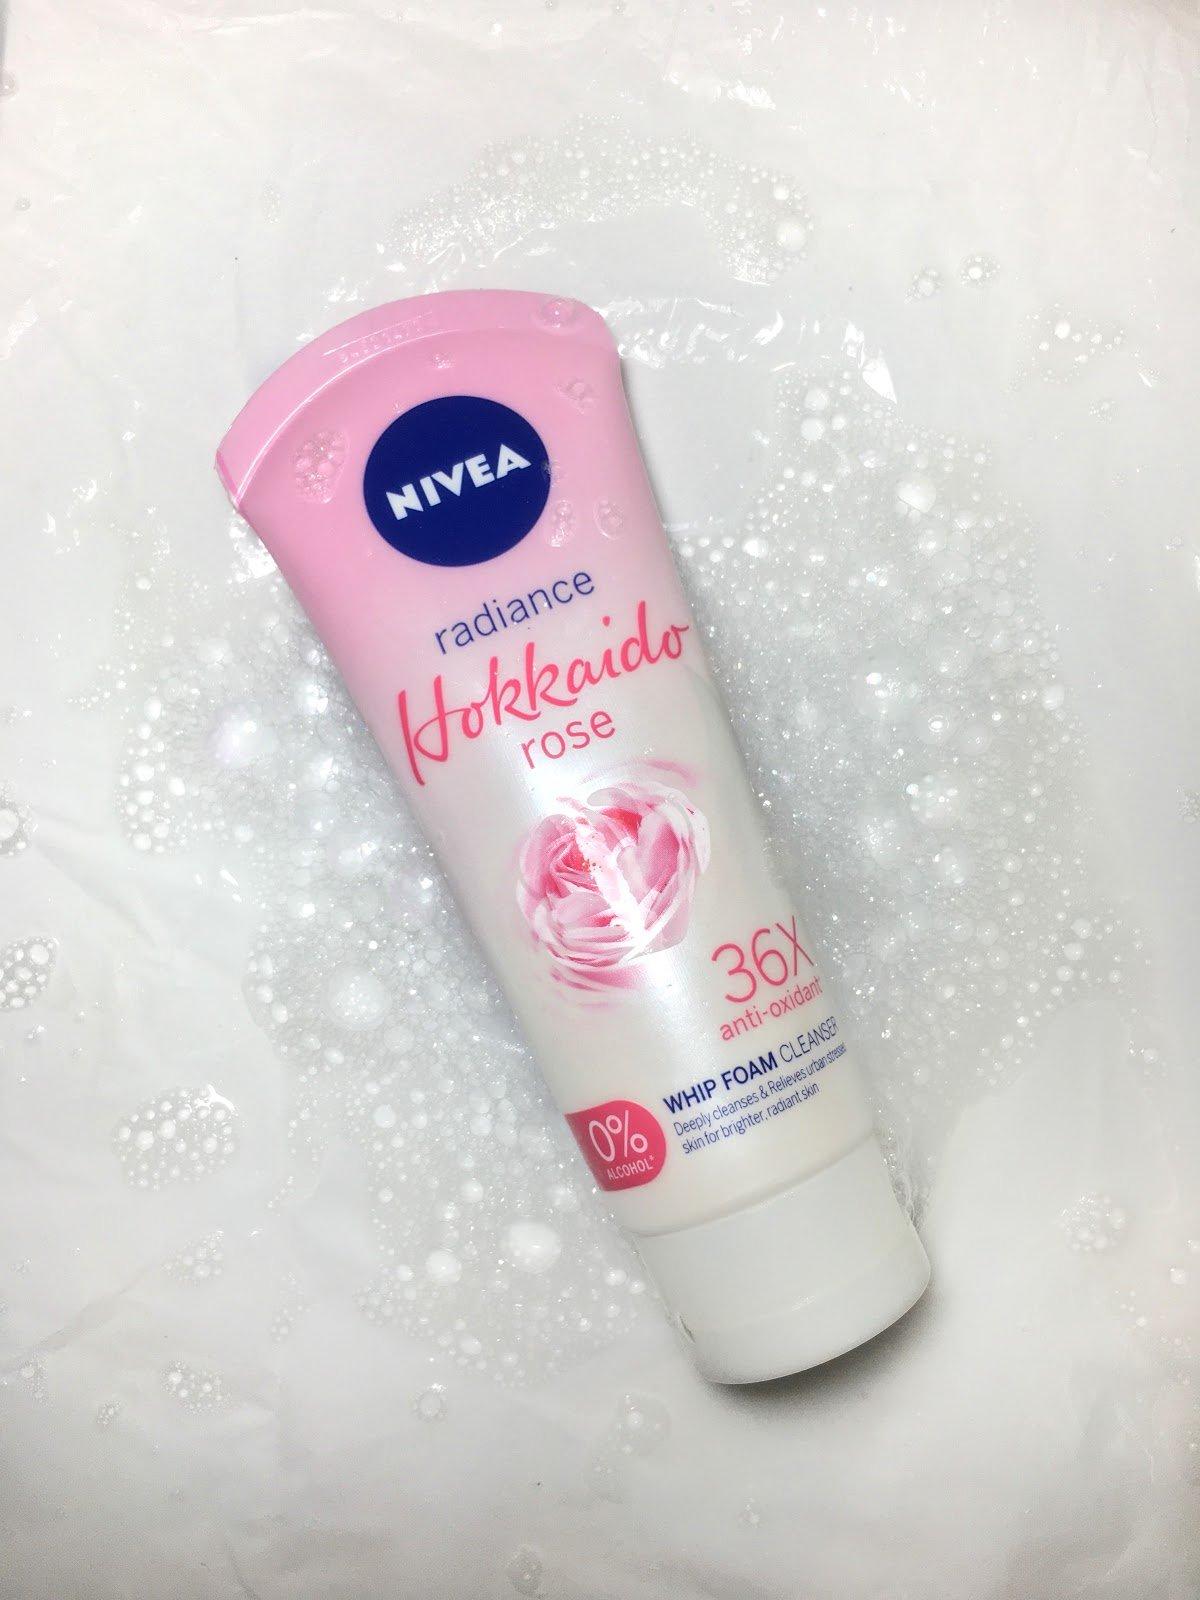 Review sữa rửa mặt NIVEA Hokkaido Rose sau 1 tháng dùng chăm chỉ